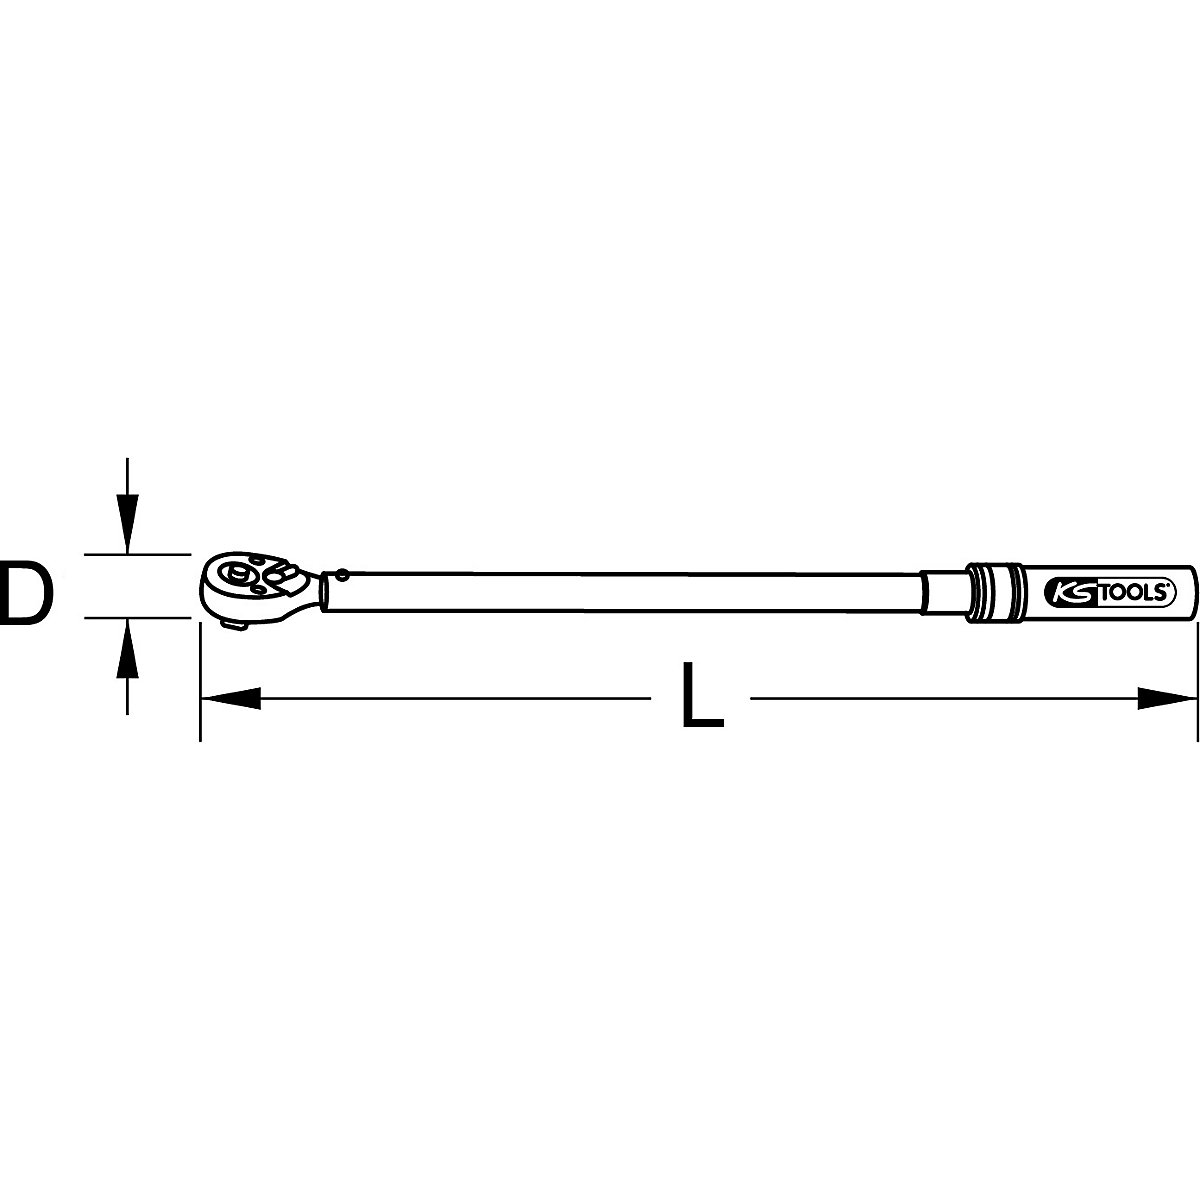 Clé dynamométrique industrielle, réversible – KS Tools: 3/4